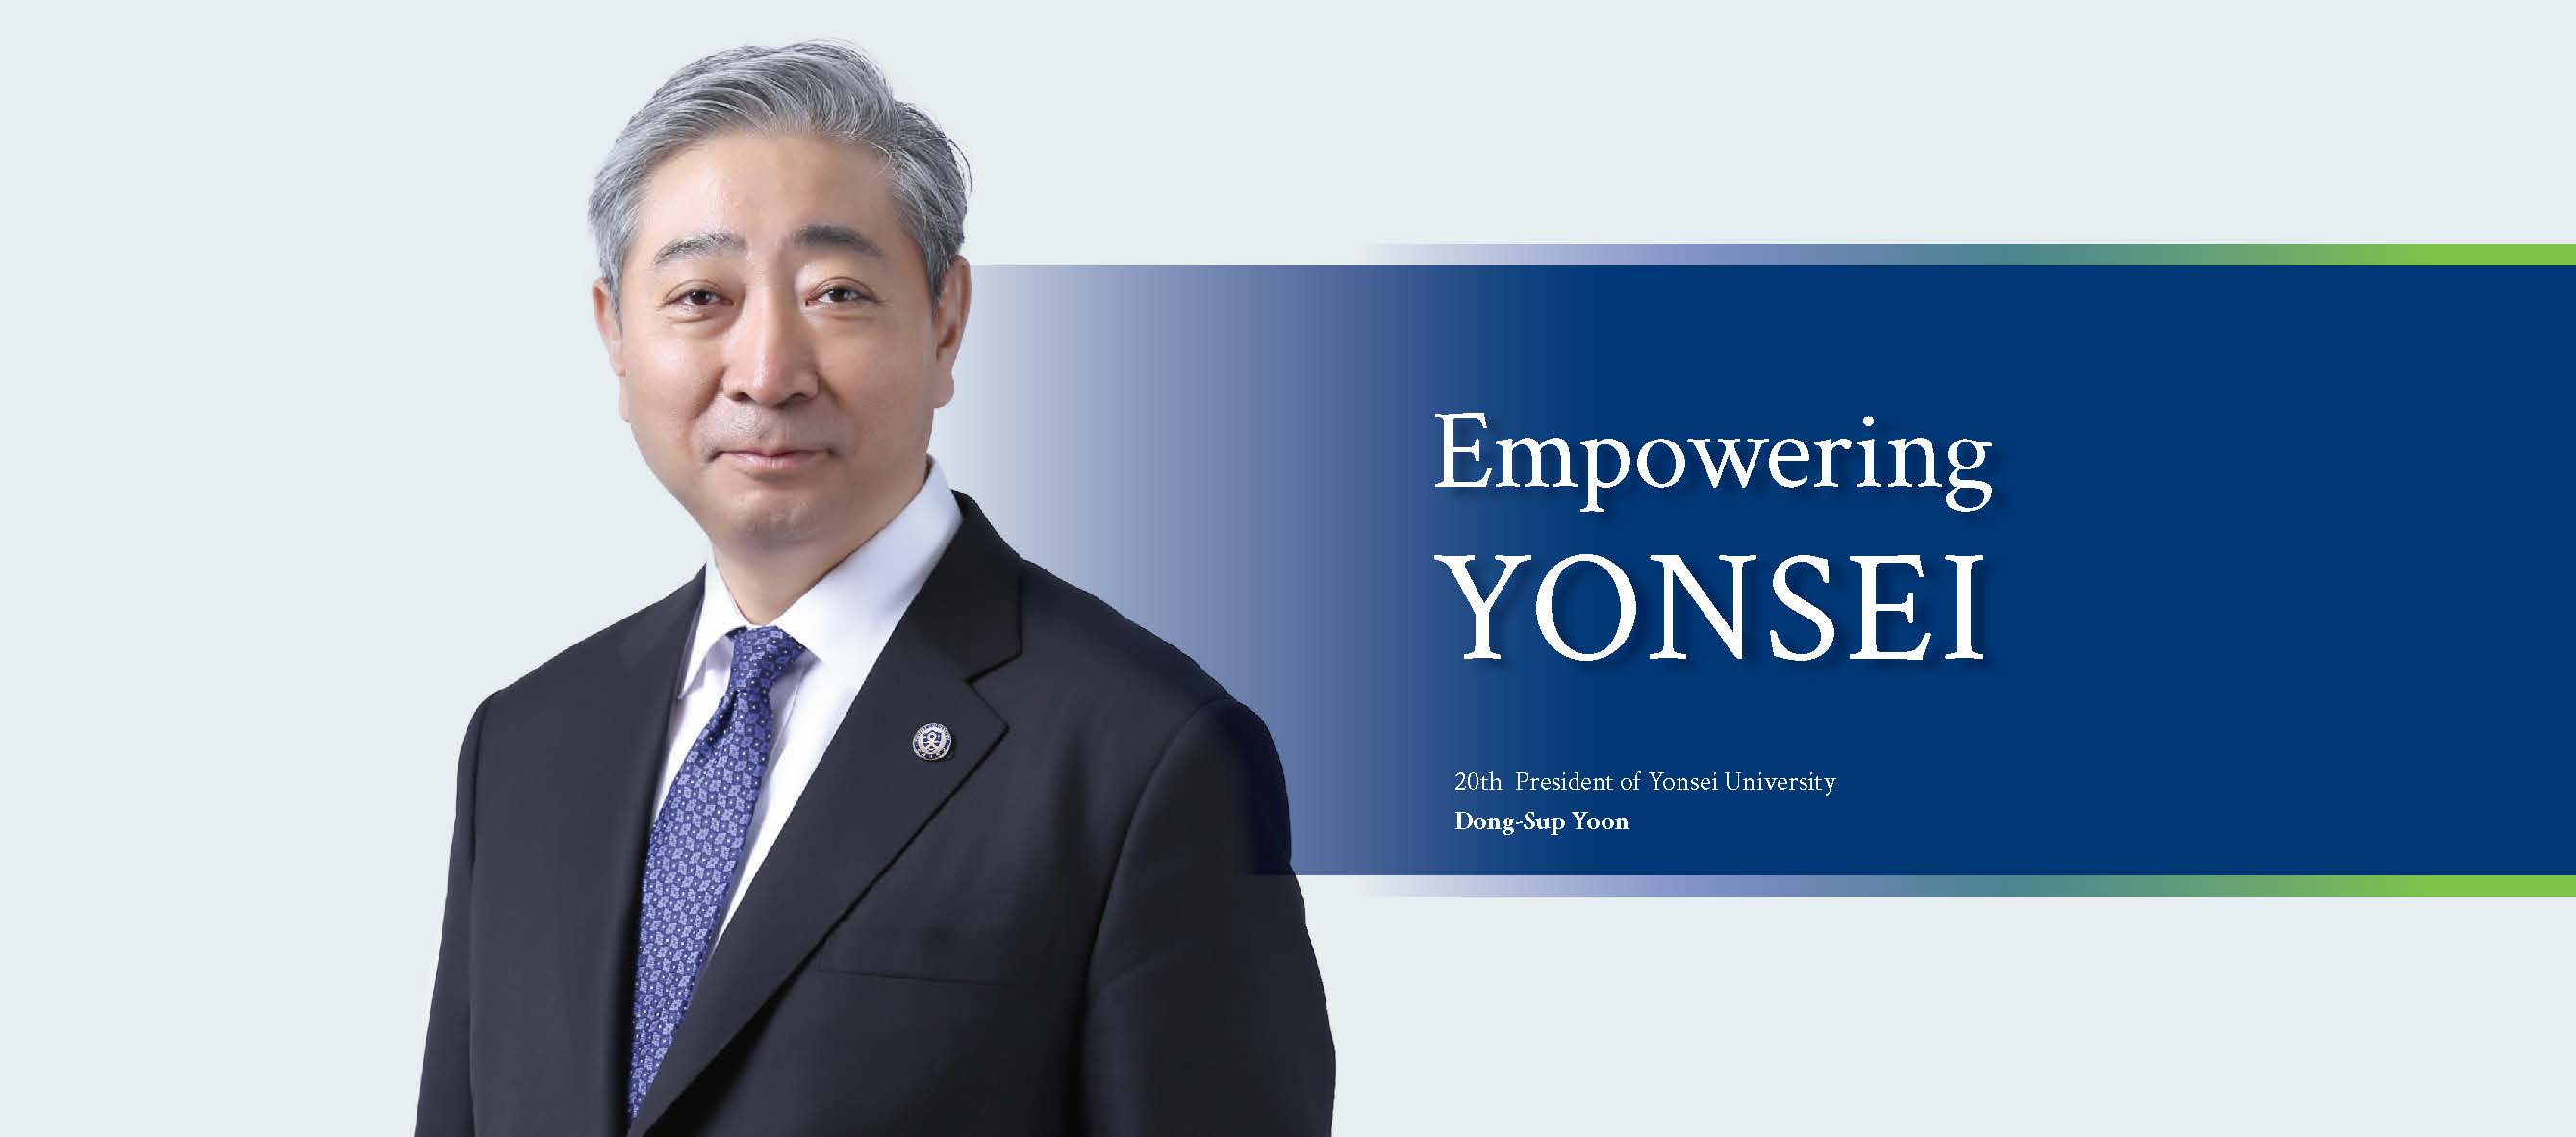 Empowering Yonsei! 20th President of Yonsei University Dong-Sup Yoon